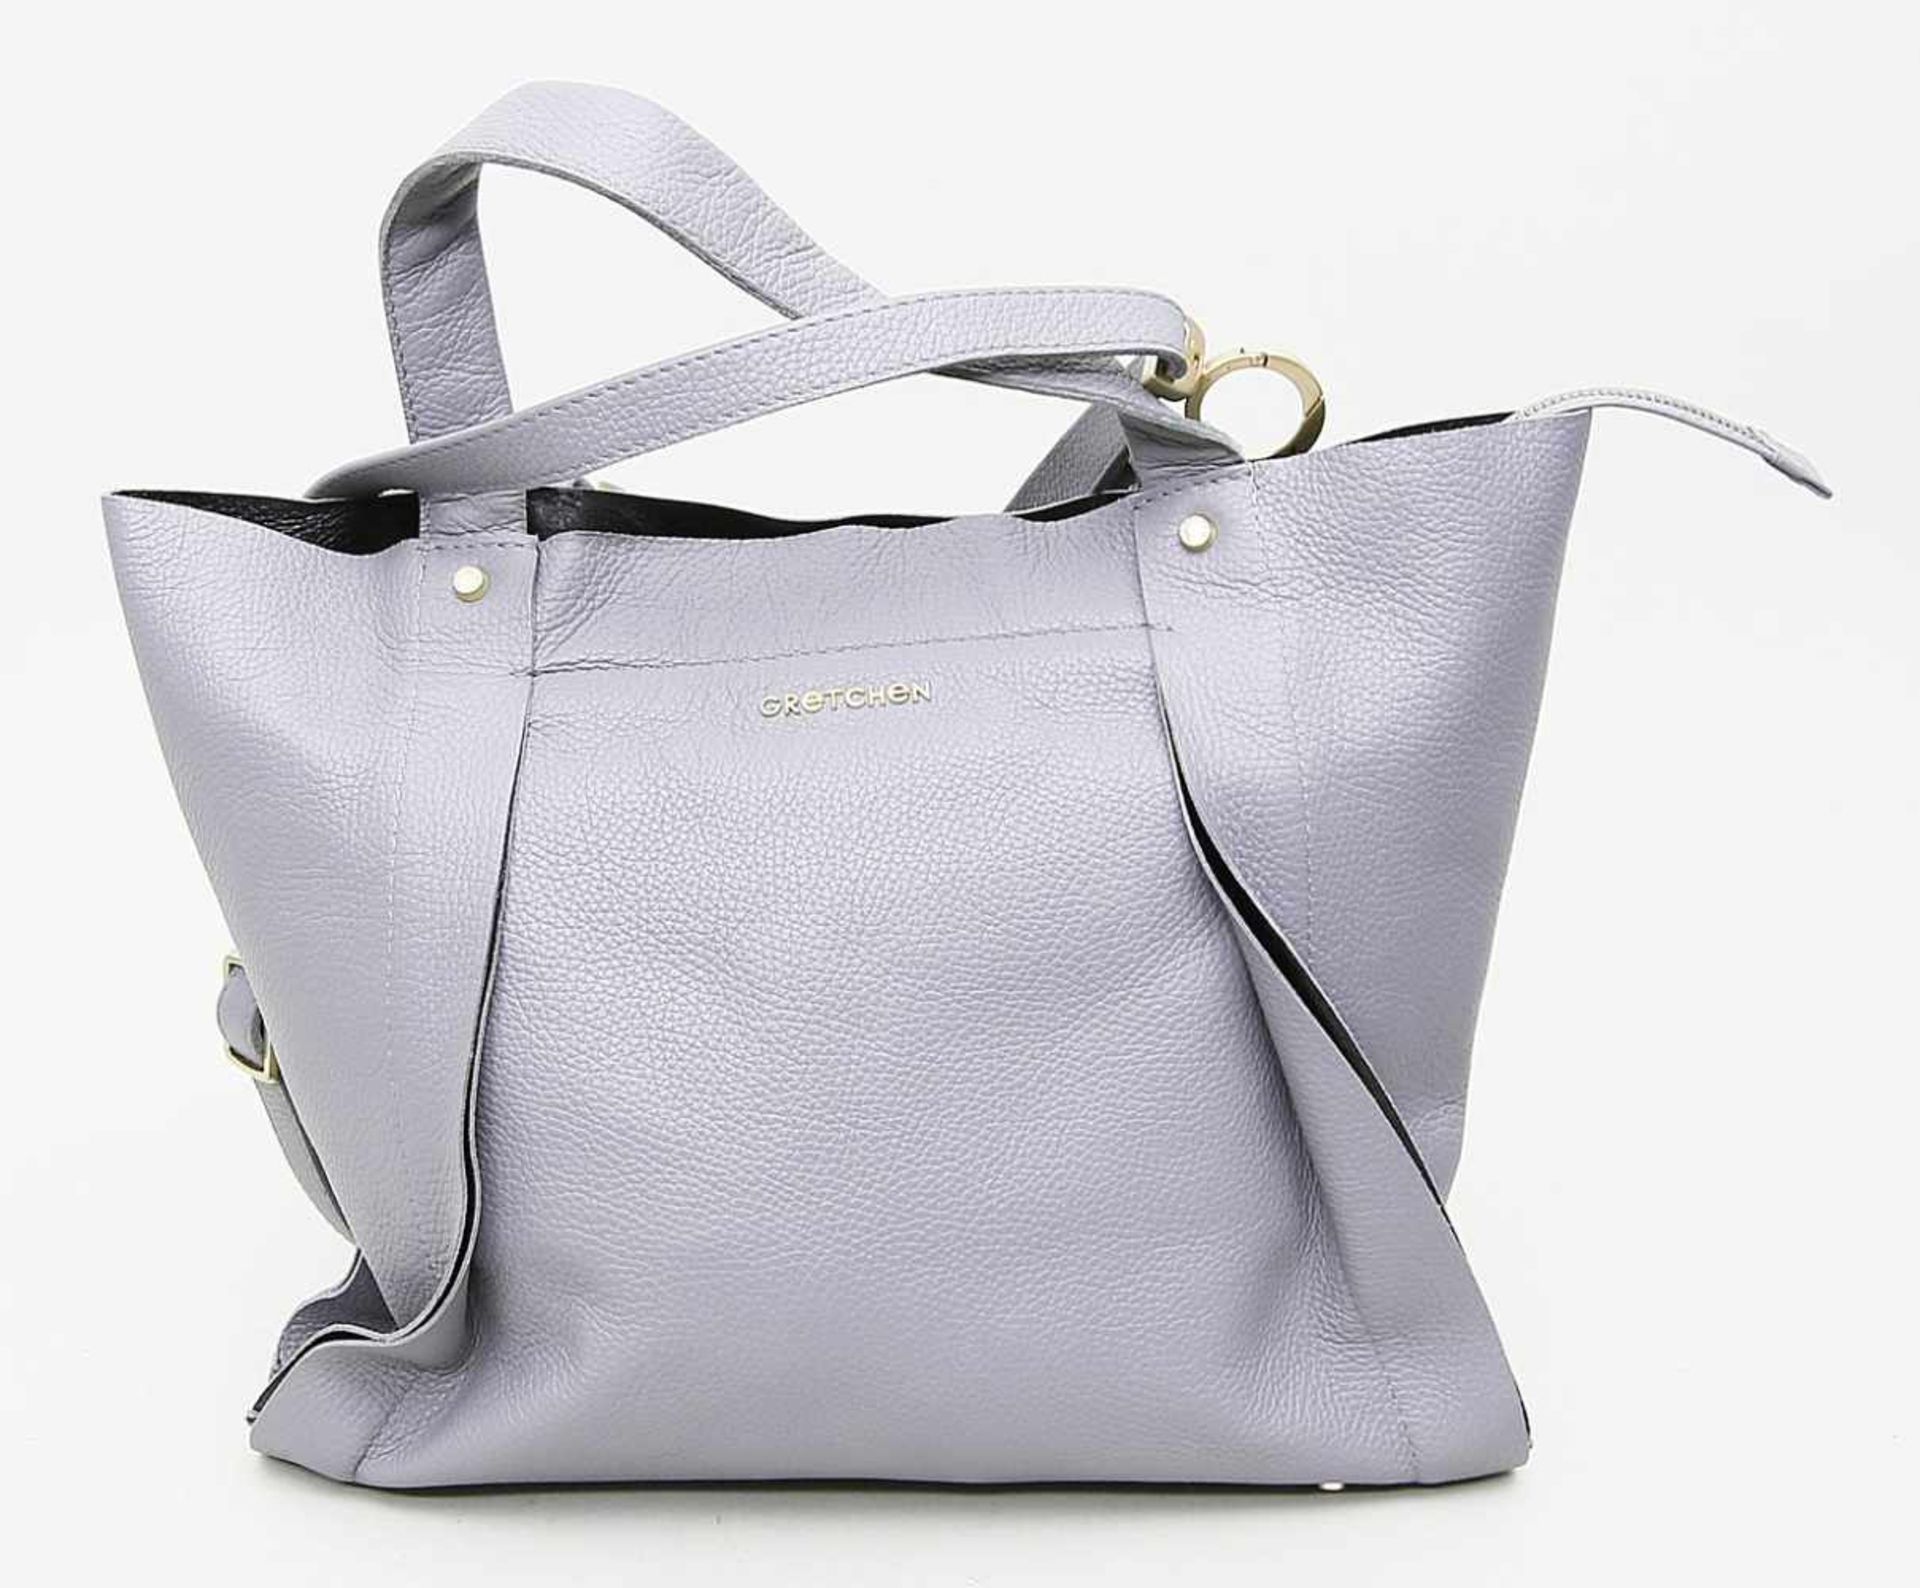 Gretchen- Handtasche.Graue Shopper-Bag aus Kalbsleder mit abnehm- und verstellbarem Riemen.